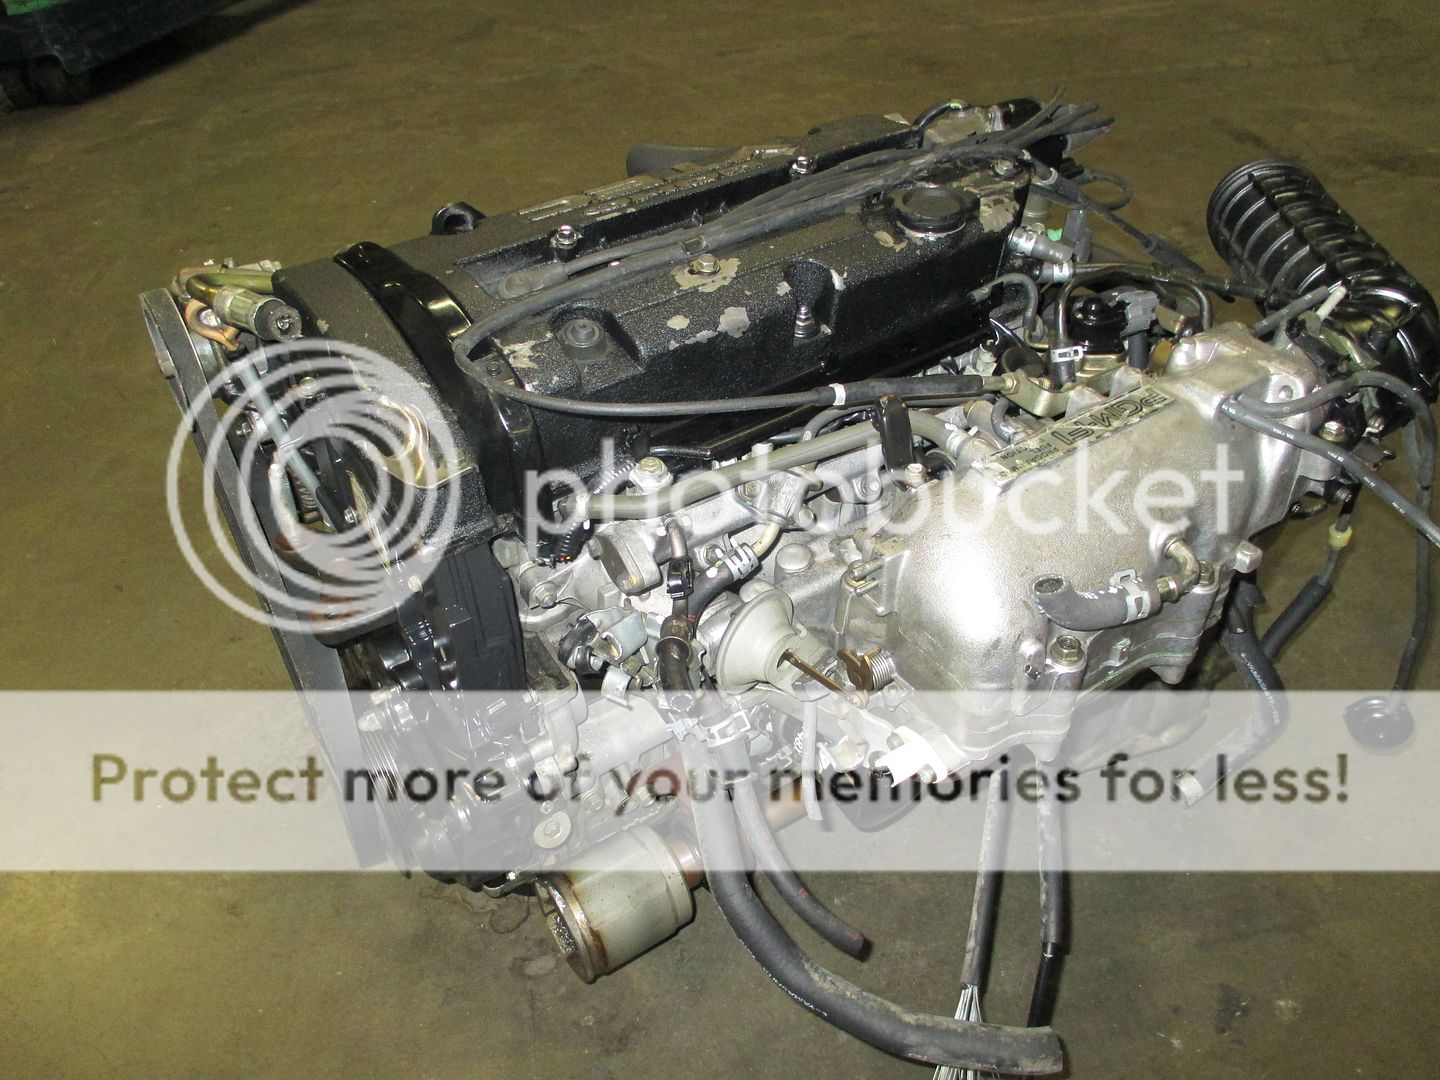 Honda Prelude JDM H22A OBD1 DOHC vtec Engine 92 96 Motor Manual Transmission H22